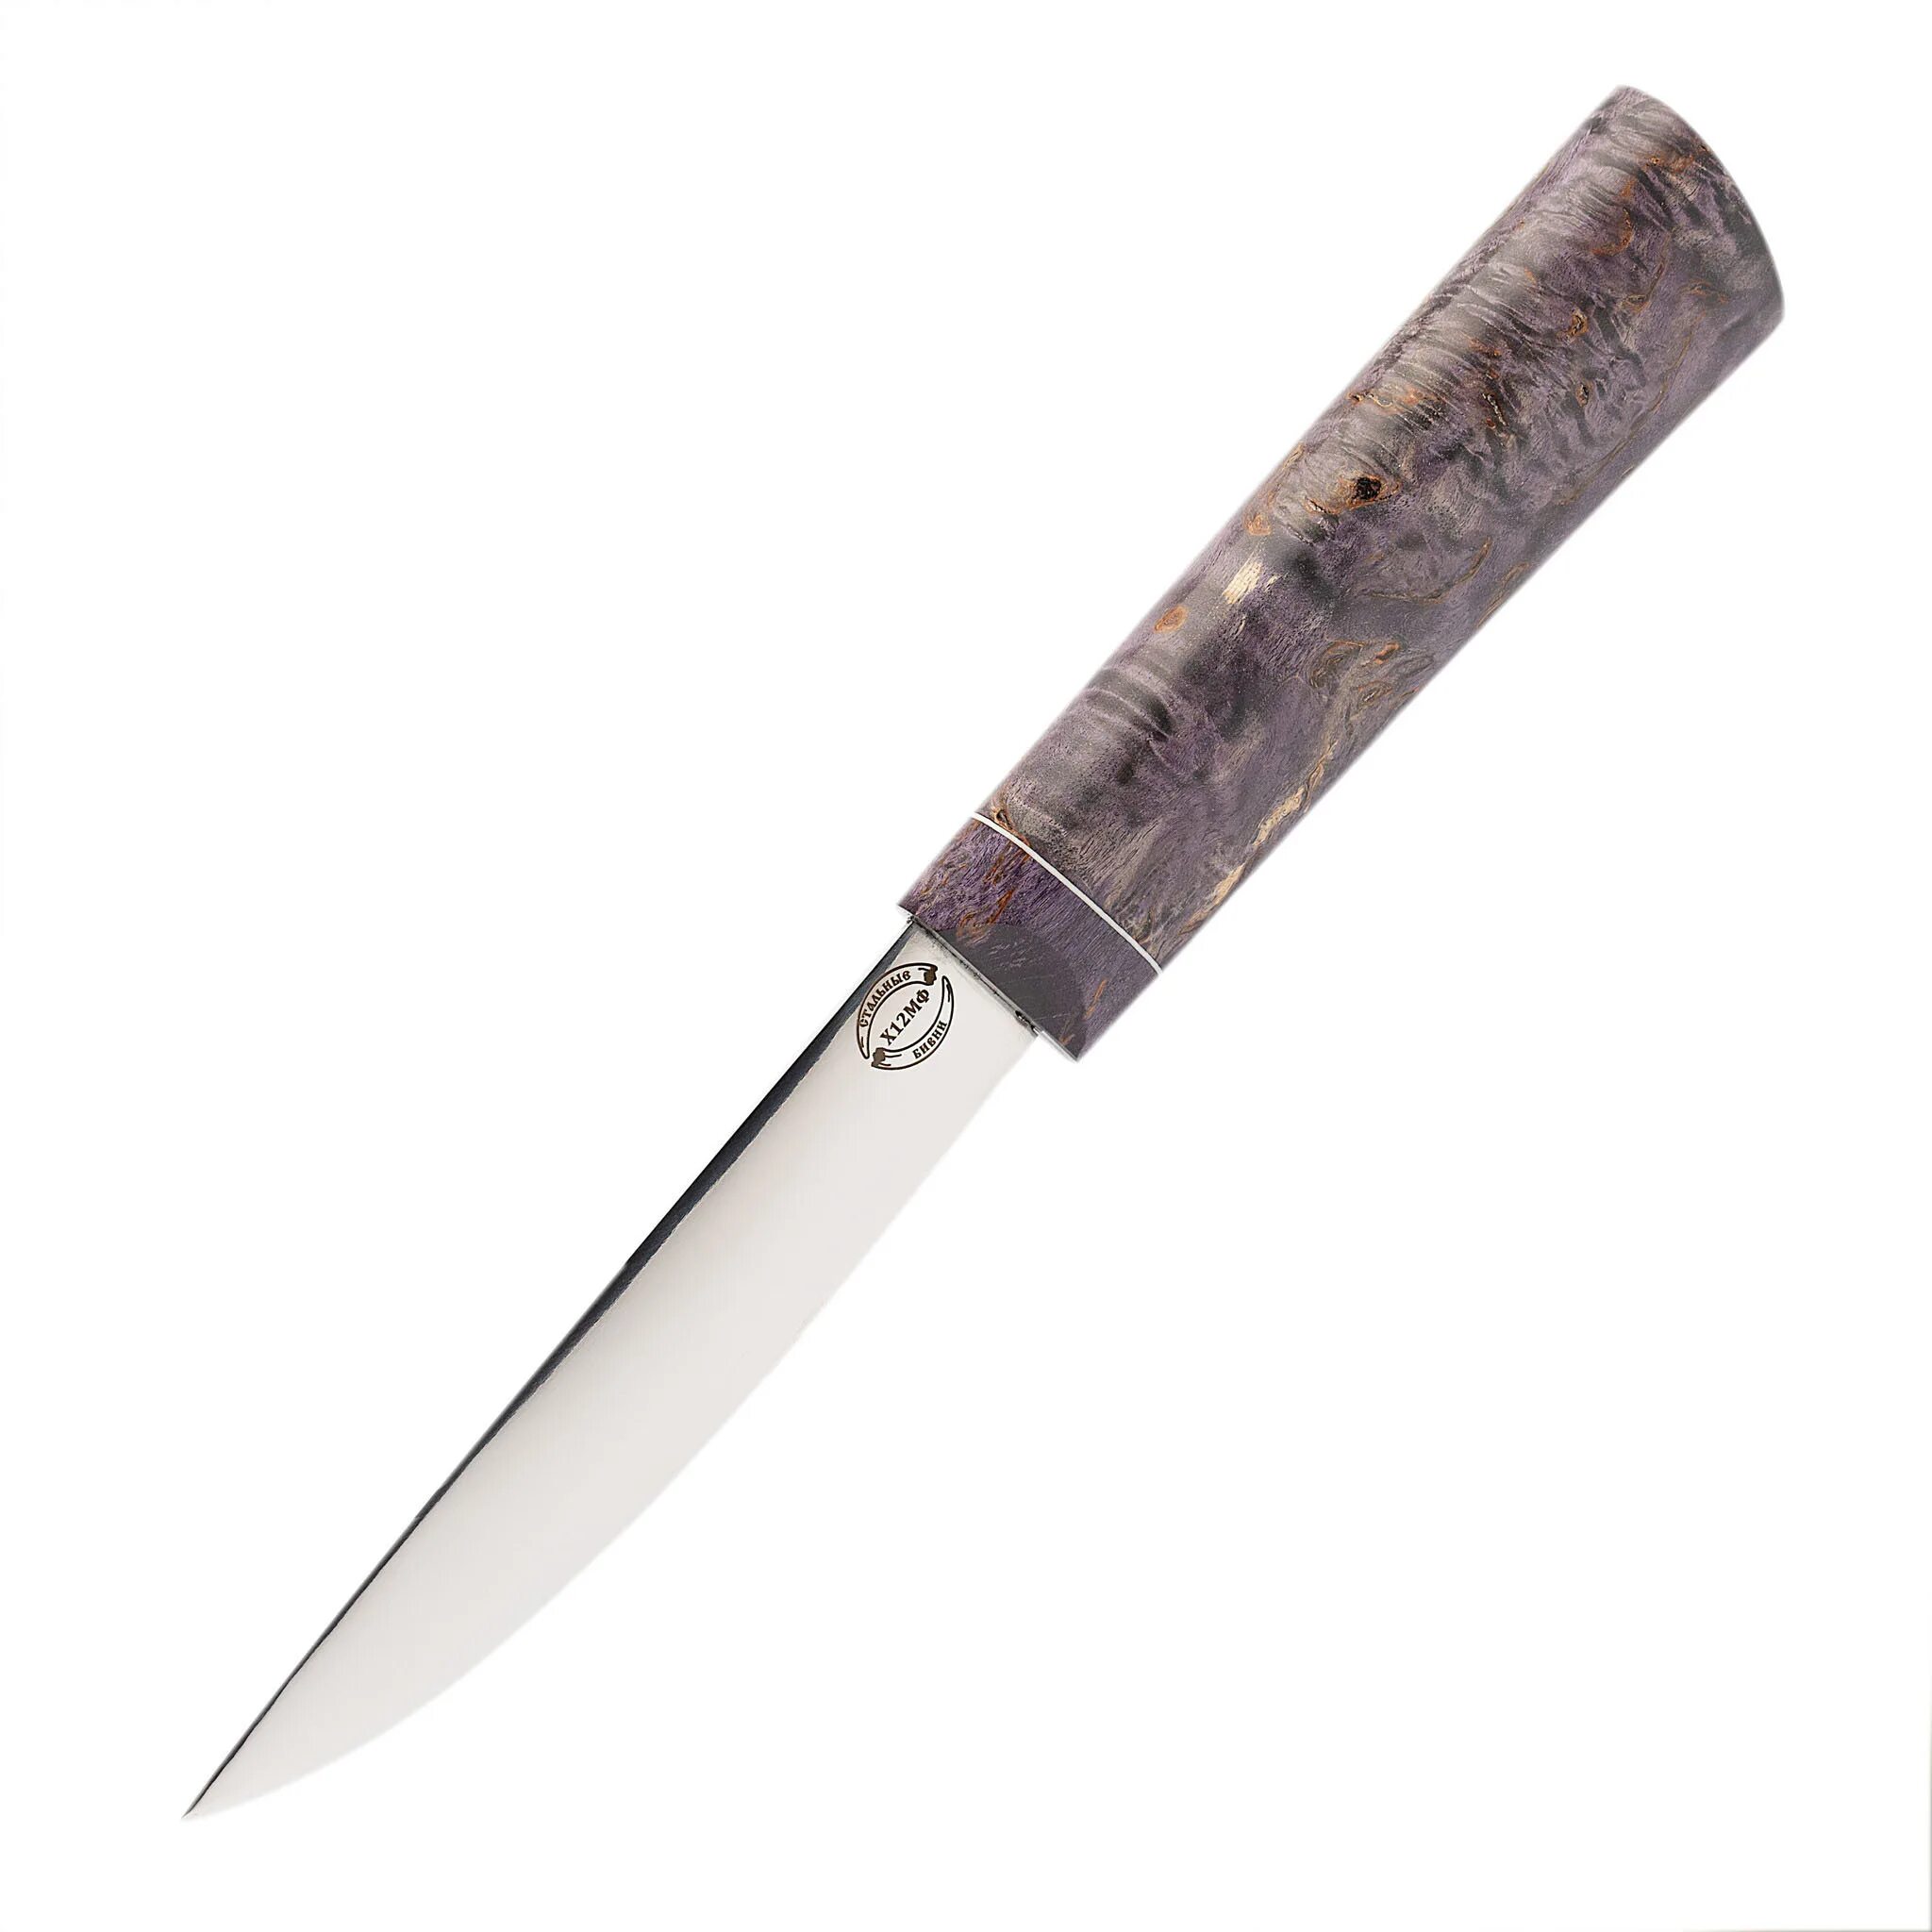 Ножи стальные бивни купить. Стальные бивни якутские ножи. Якут средний стальные бивни нож. Карельский нож. Кухонный нож в якутском стиле.